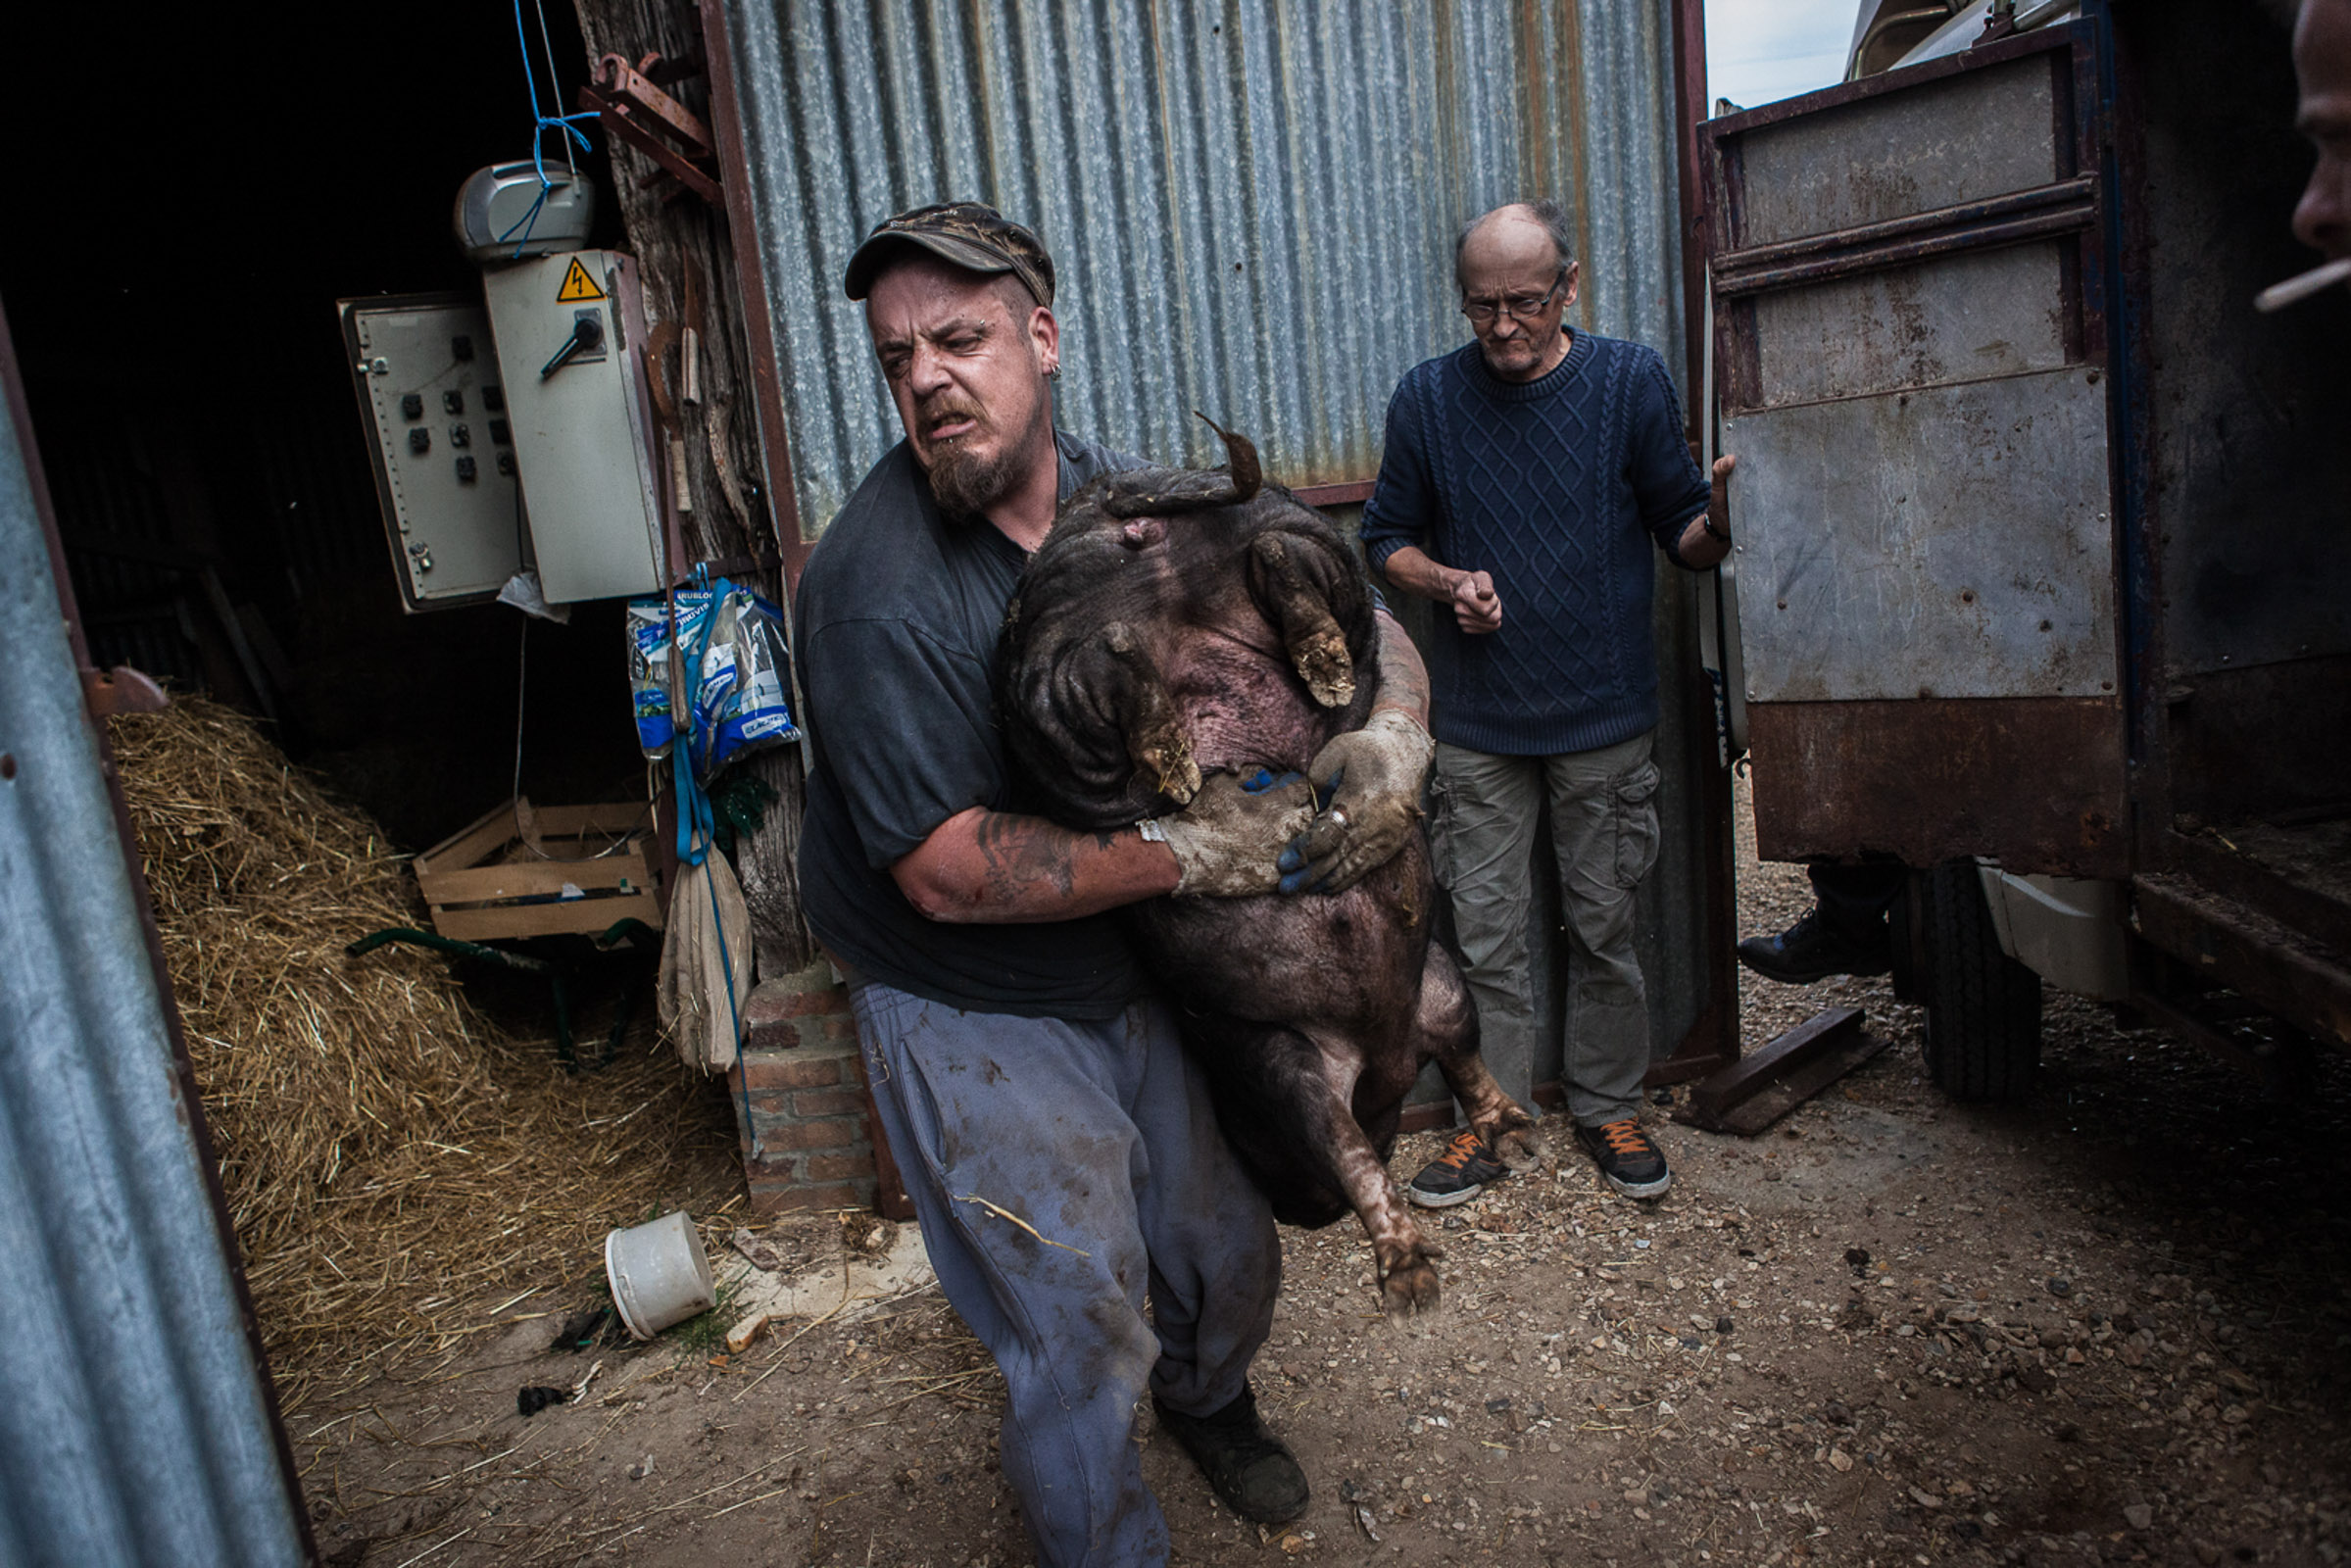 Villebeon, le 2 Avril 2014; Remy, dans le village depuis plus d'un an transporte les cochons offerts par une ferme voisine.

Villebeon, April 2, 2014; Remy has been living in the village for more than a year. He carries pigs offered by a nearby farm.